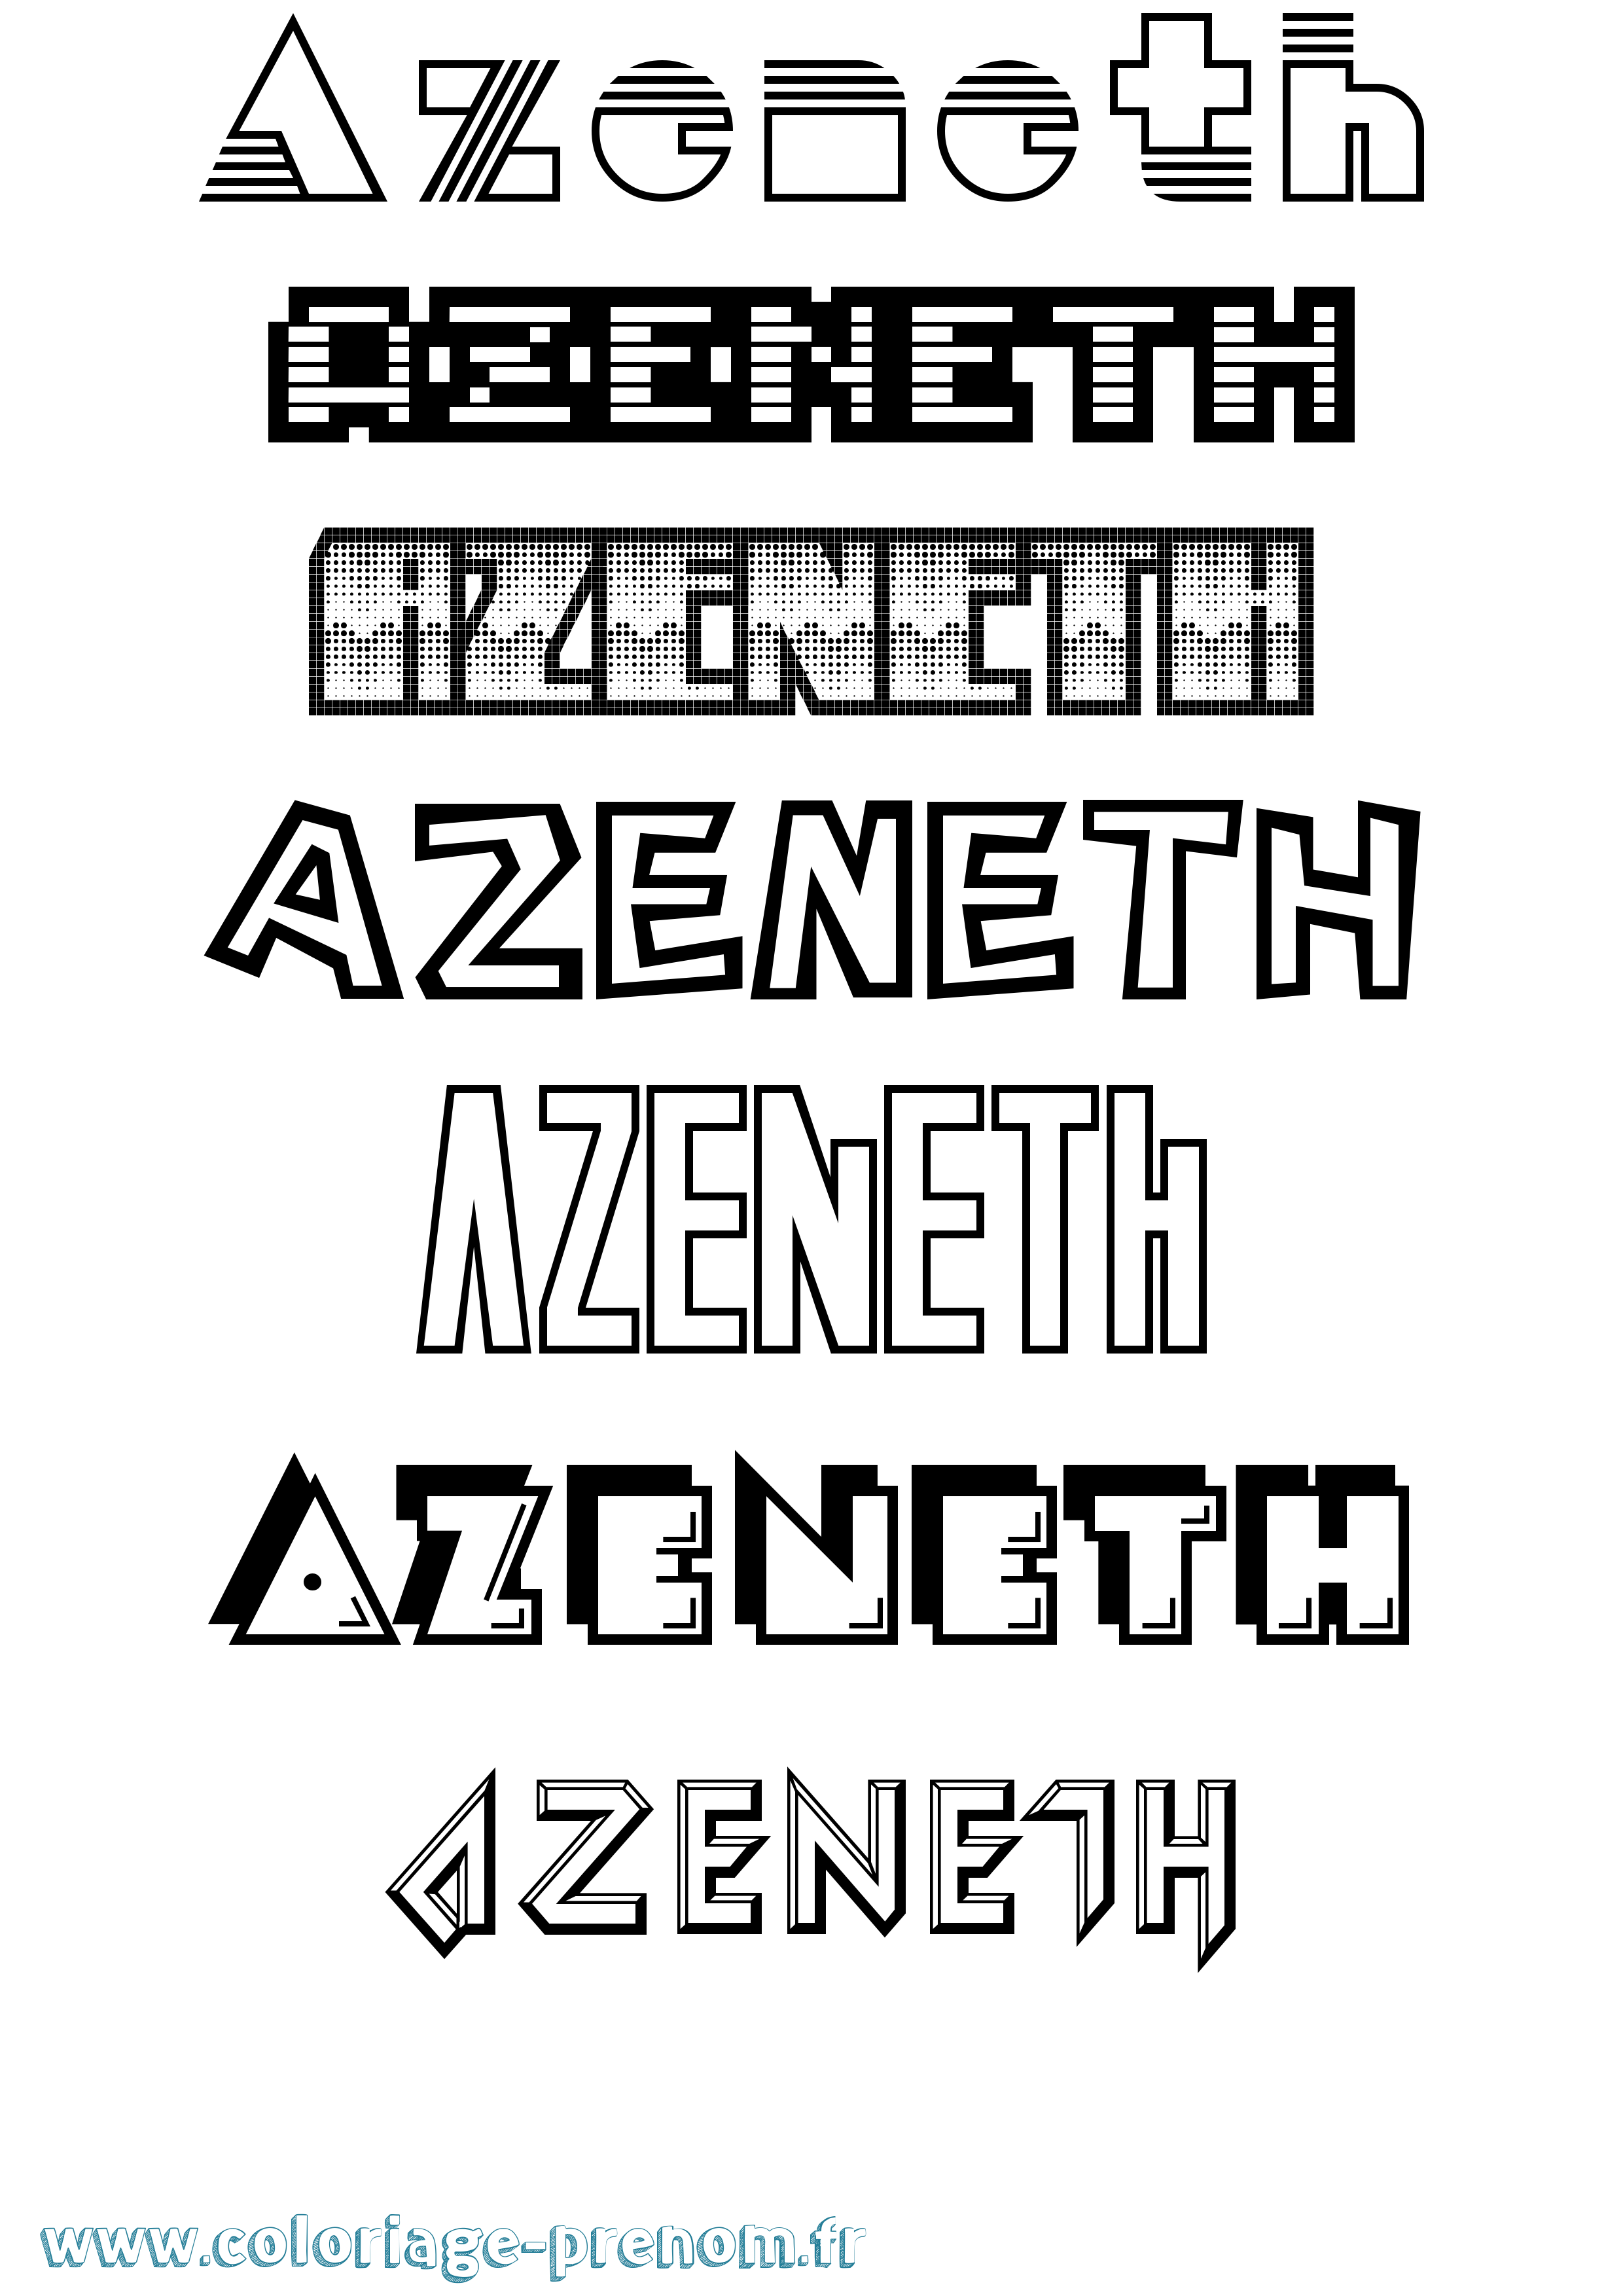 Coloriage prénom Azeneth Jeux Vidéos